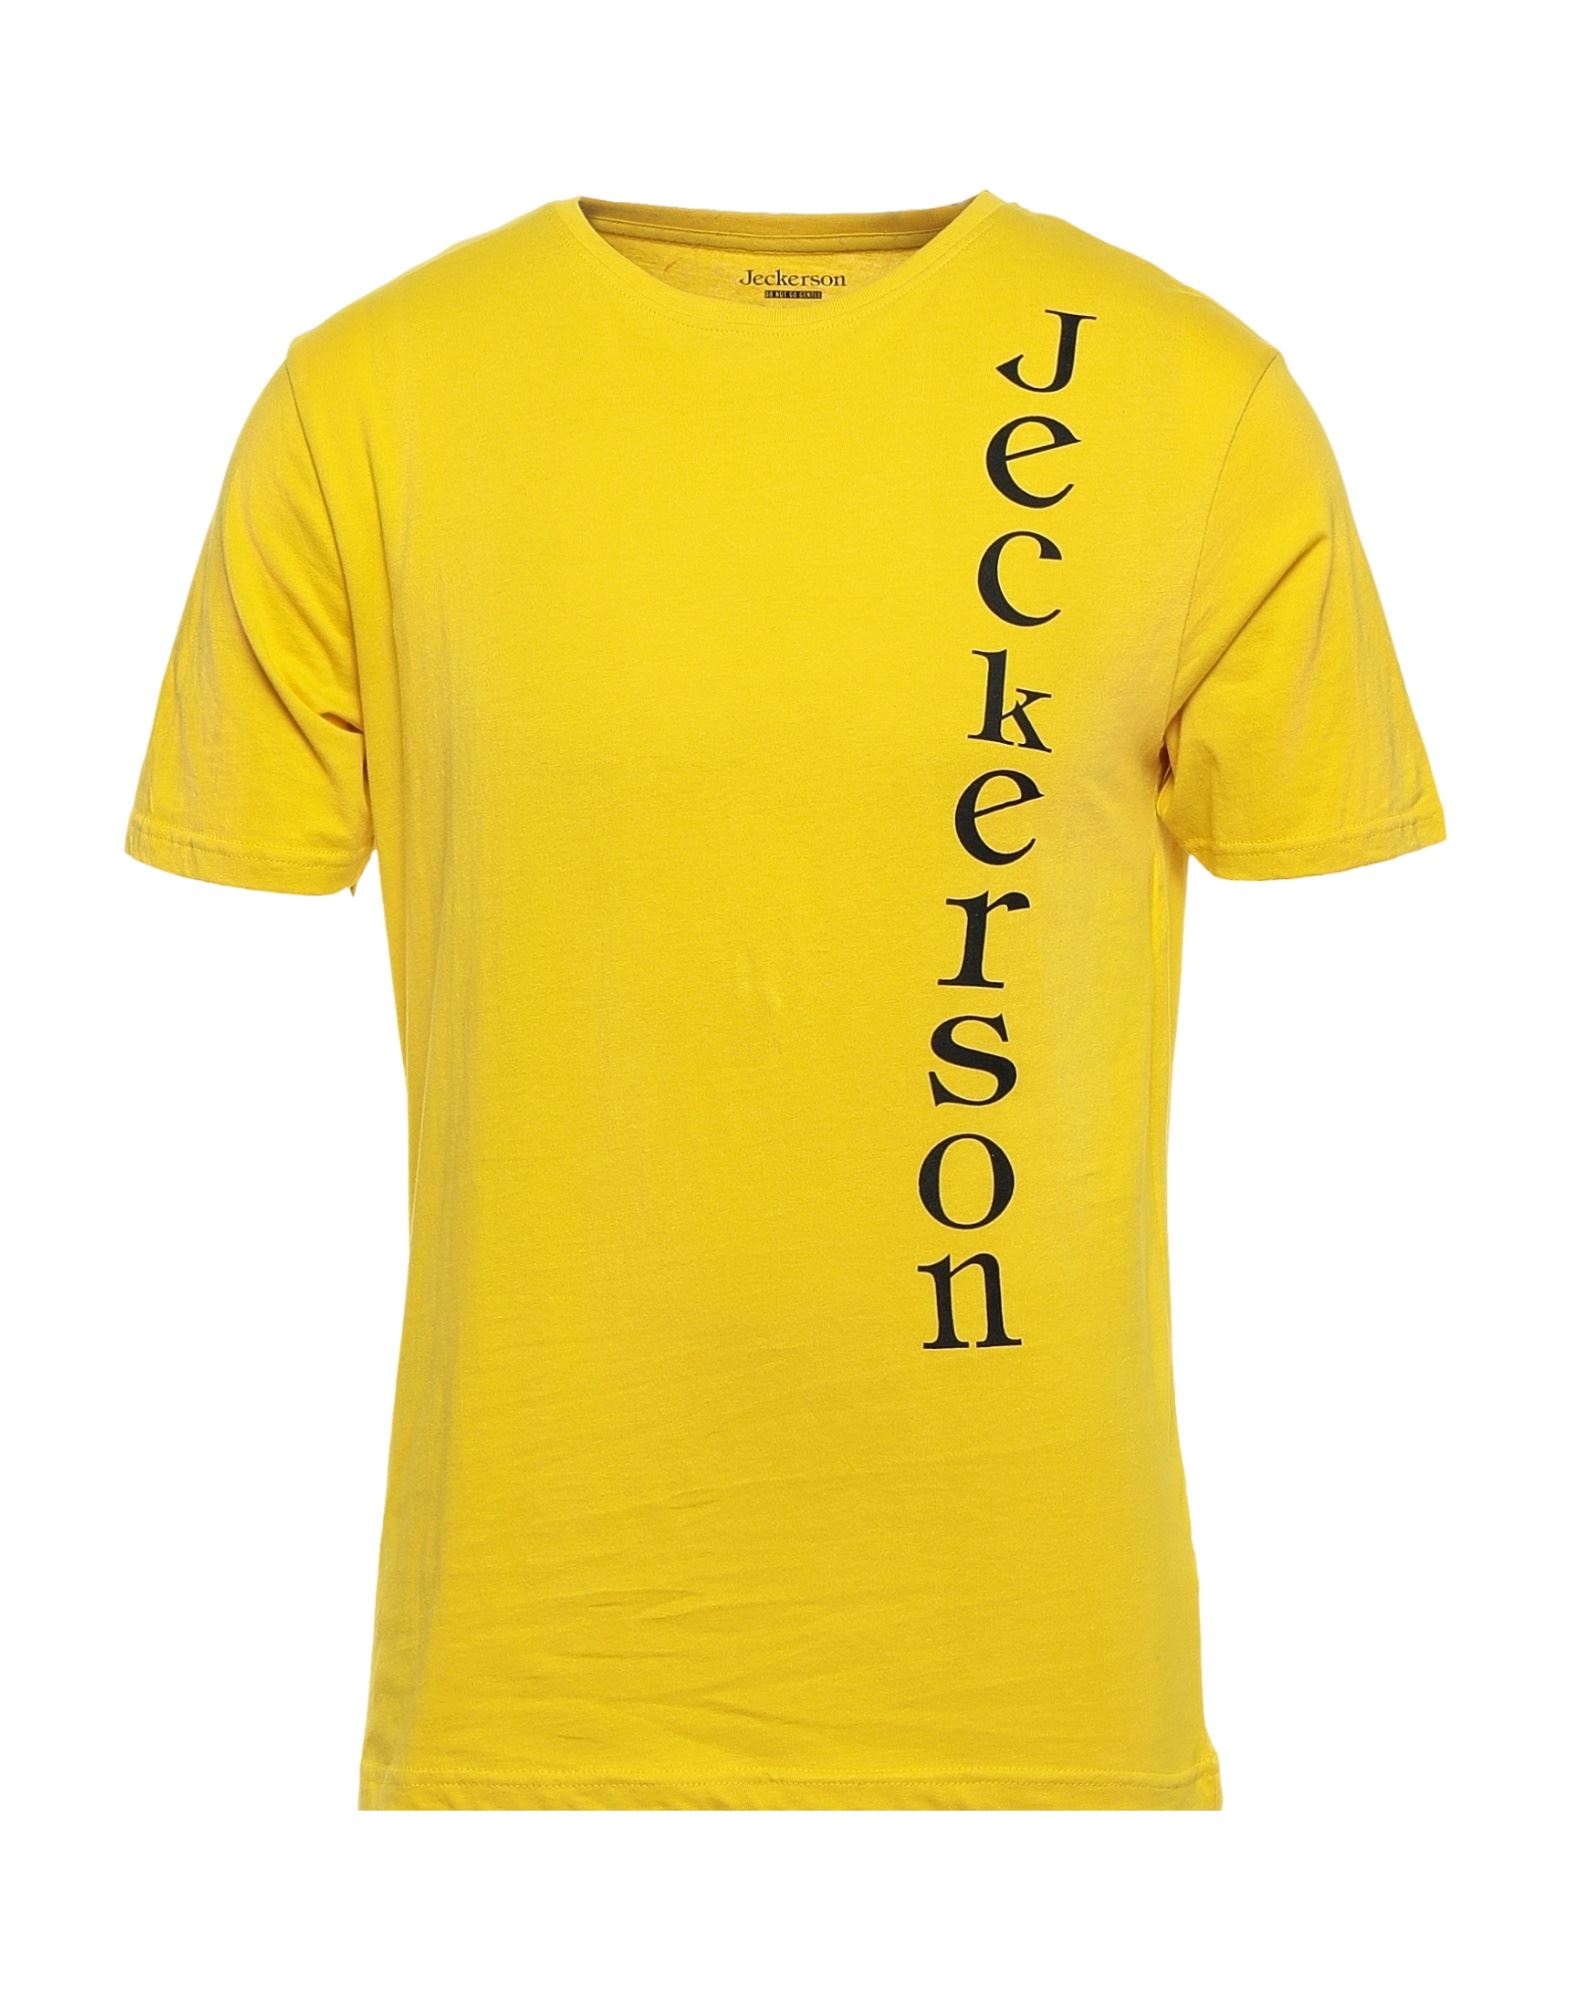 JECKERSON T-shirts Herren Gelb von JECKERSON